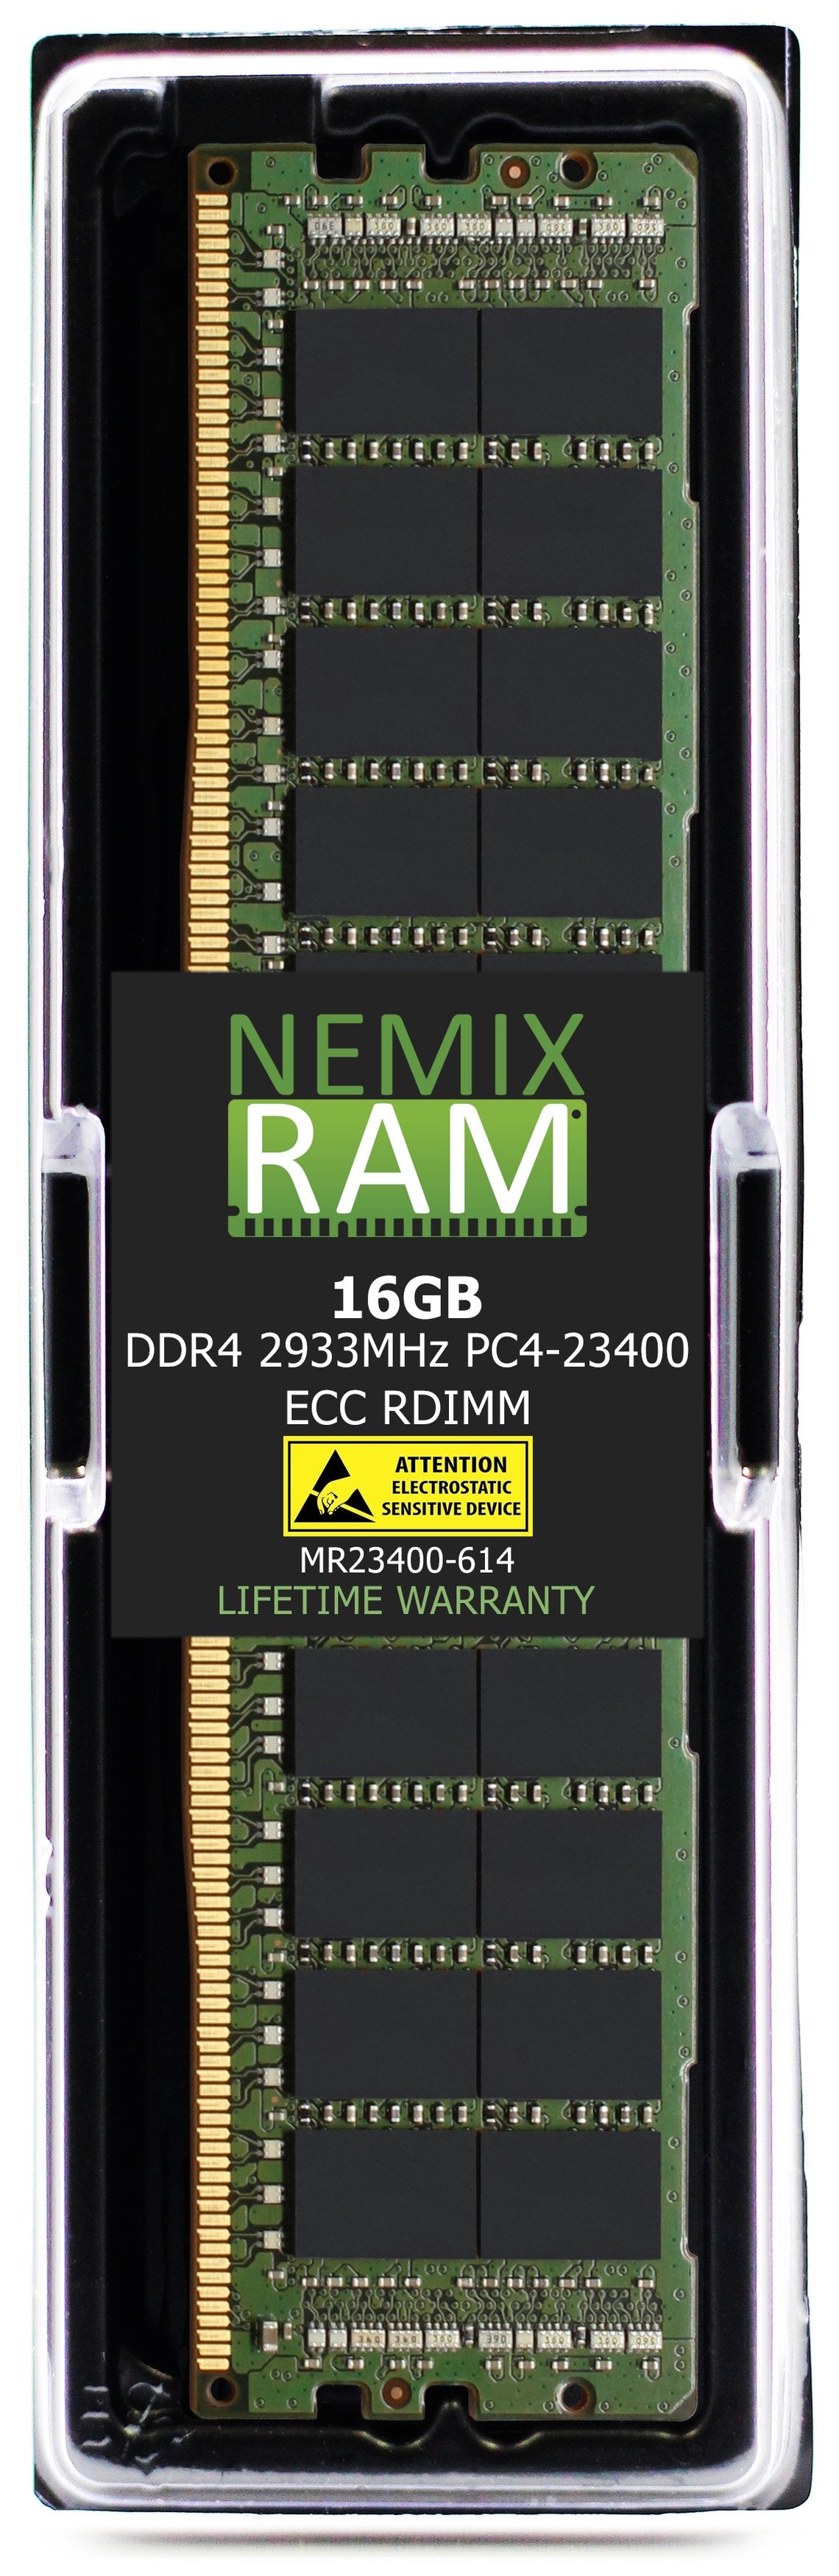 Hynix HMA82GR7CJR4N-WM 16GB DDR4 2933MHZ PC4-23400 RDIMM Compatible Memory Module